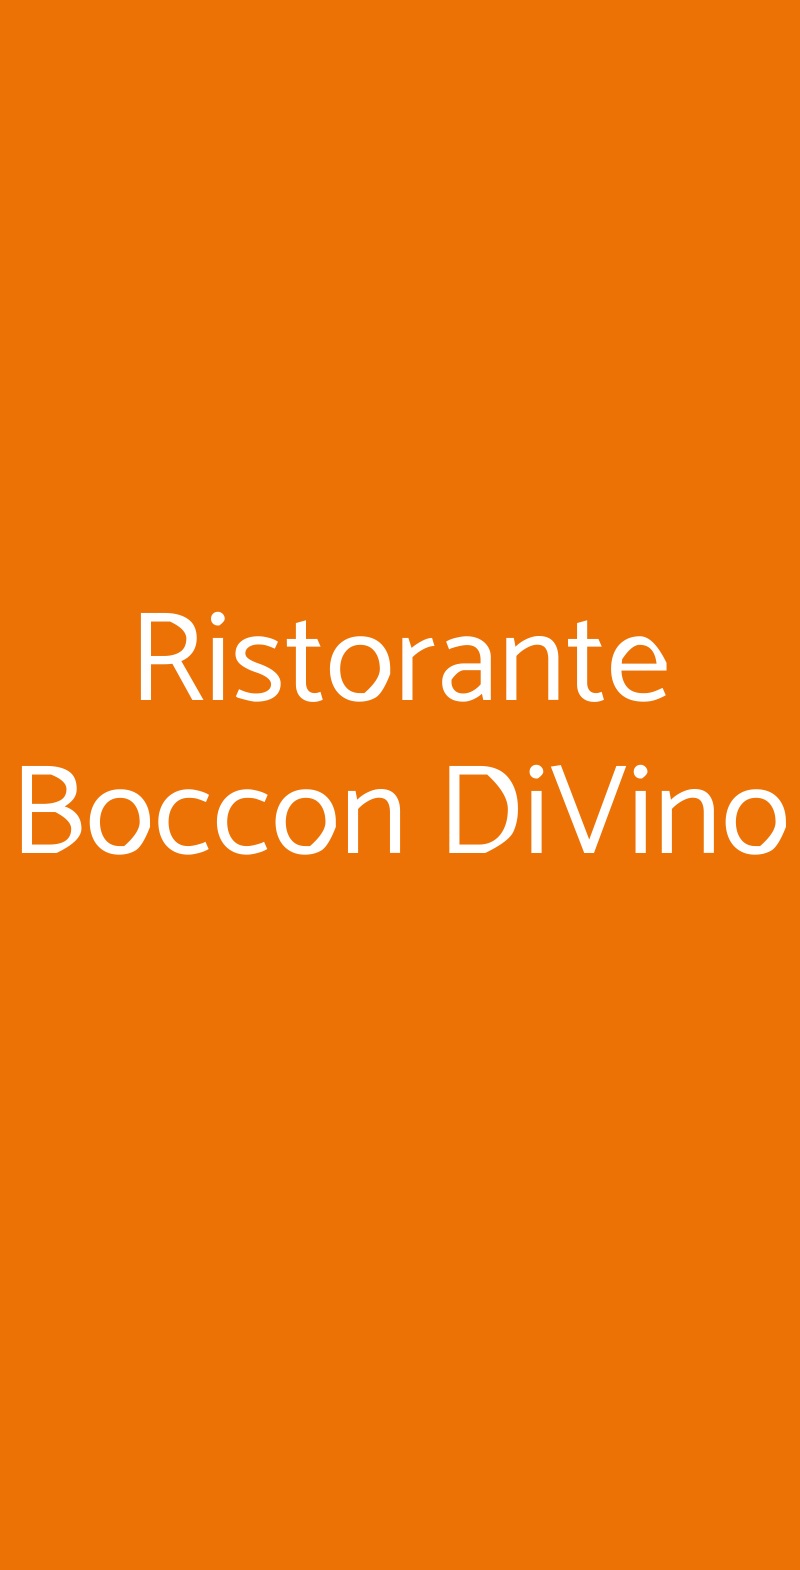 Ristorante Boccon DiVino Montalcino menù 1 pagina